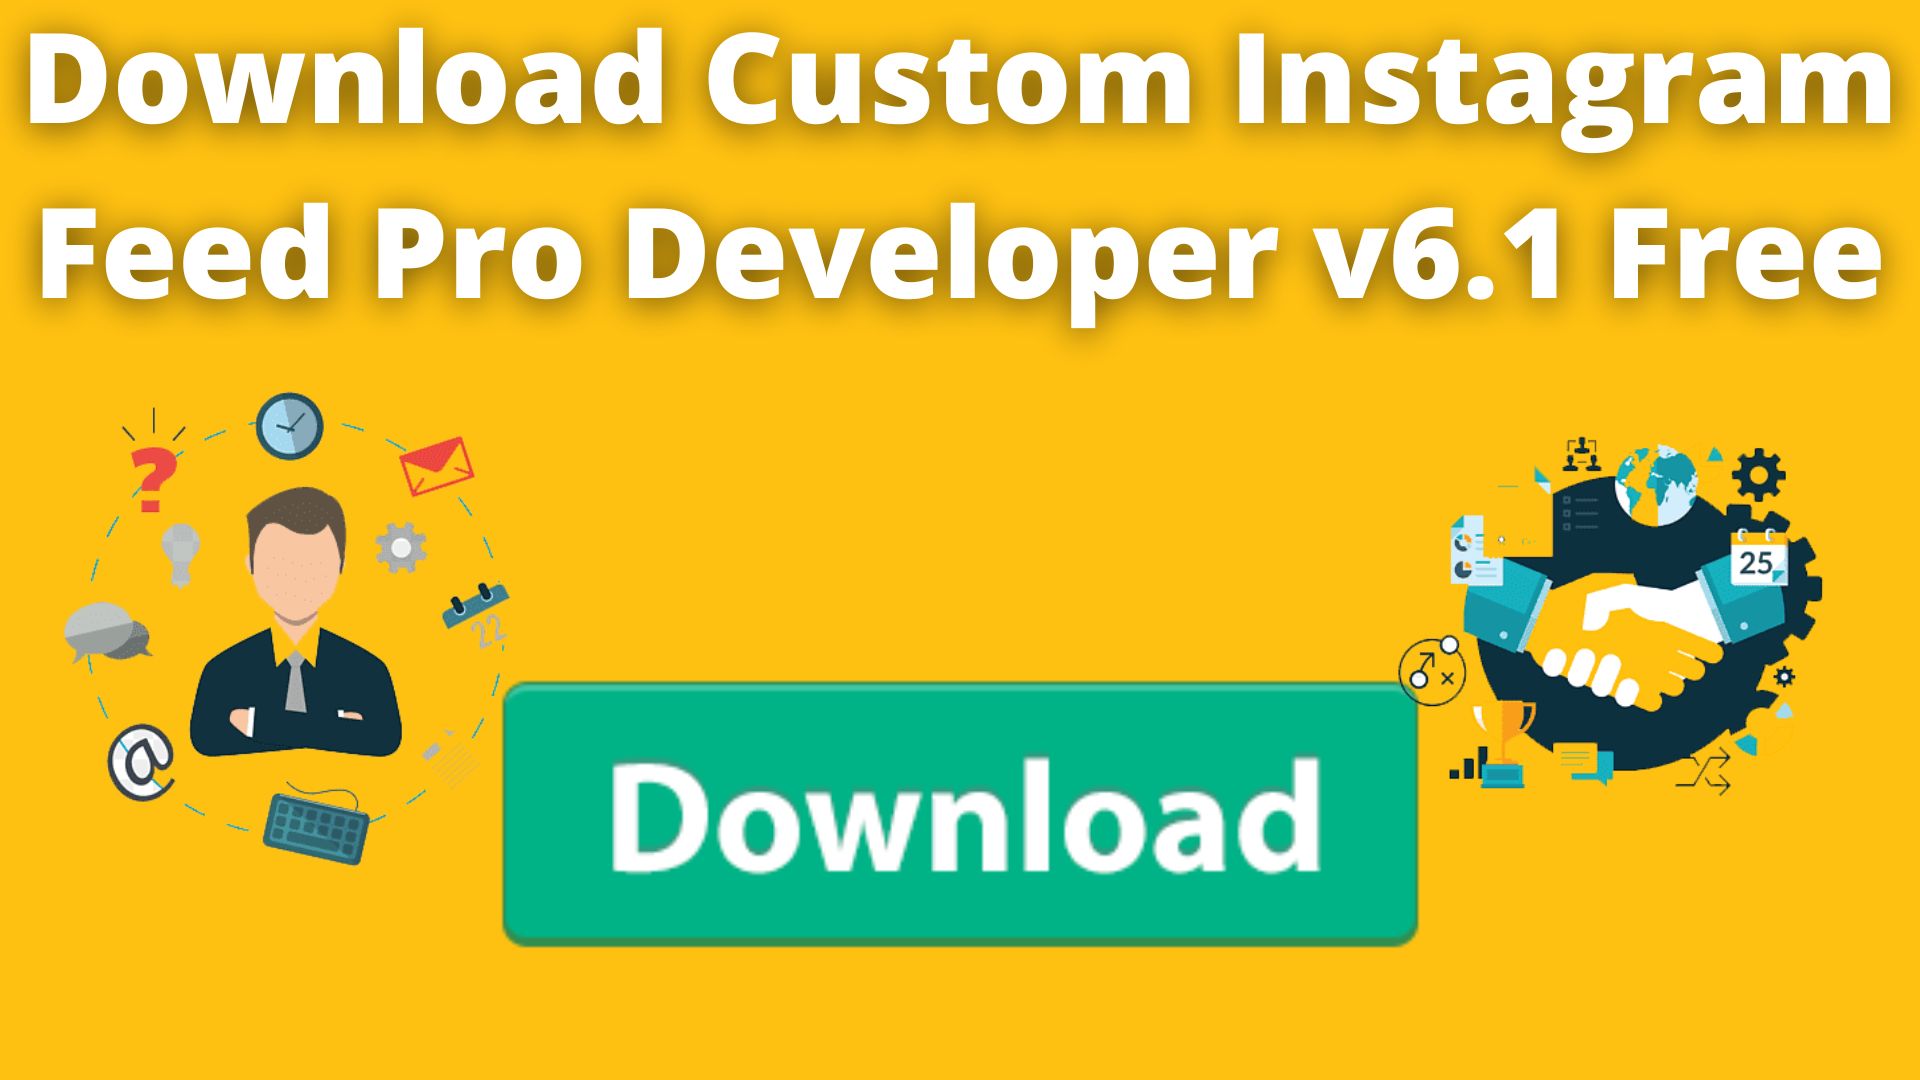 Download Custom Instagram Feed Pro Developer V6.1 Free